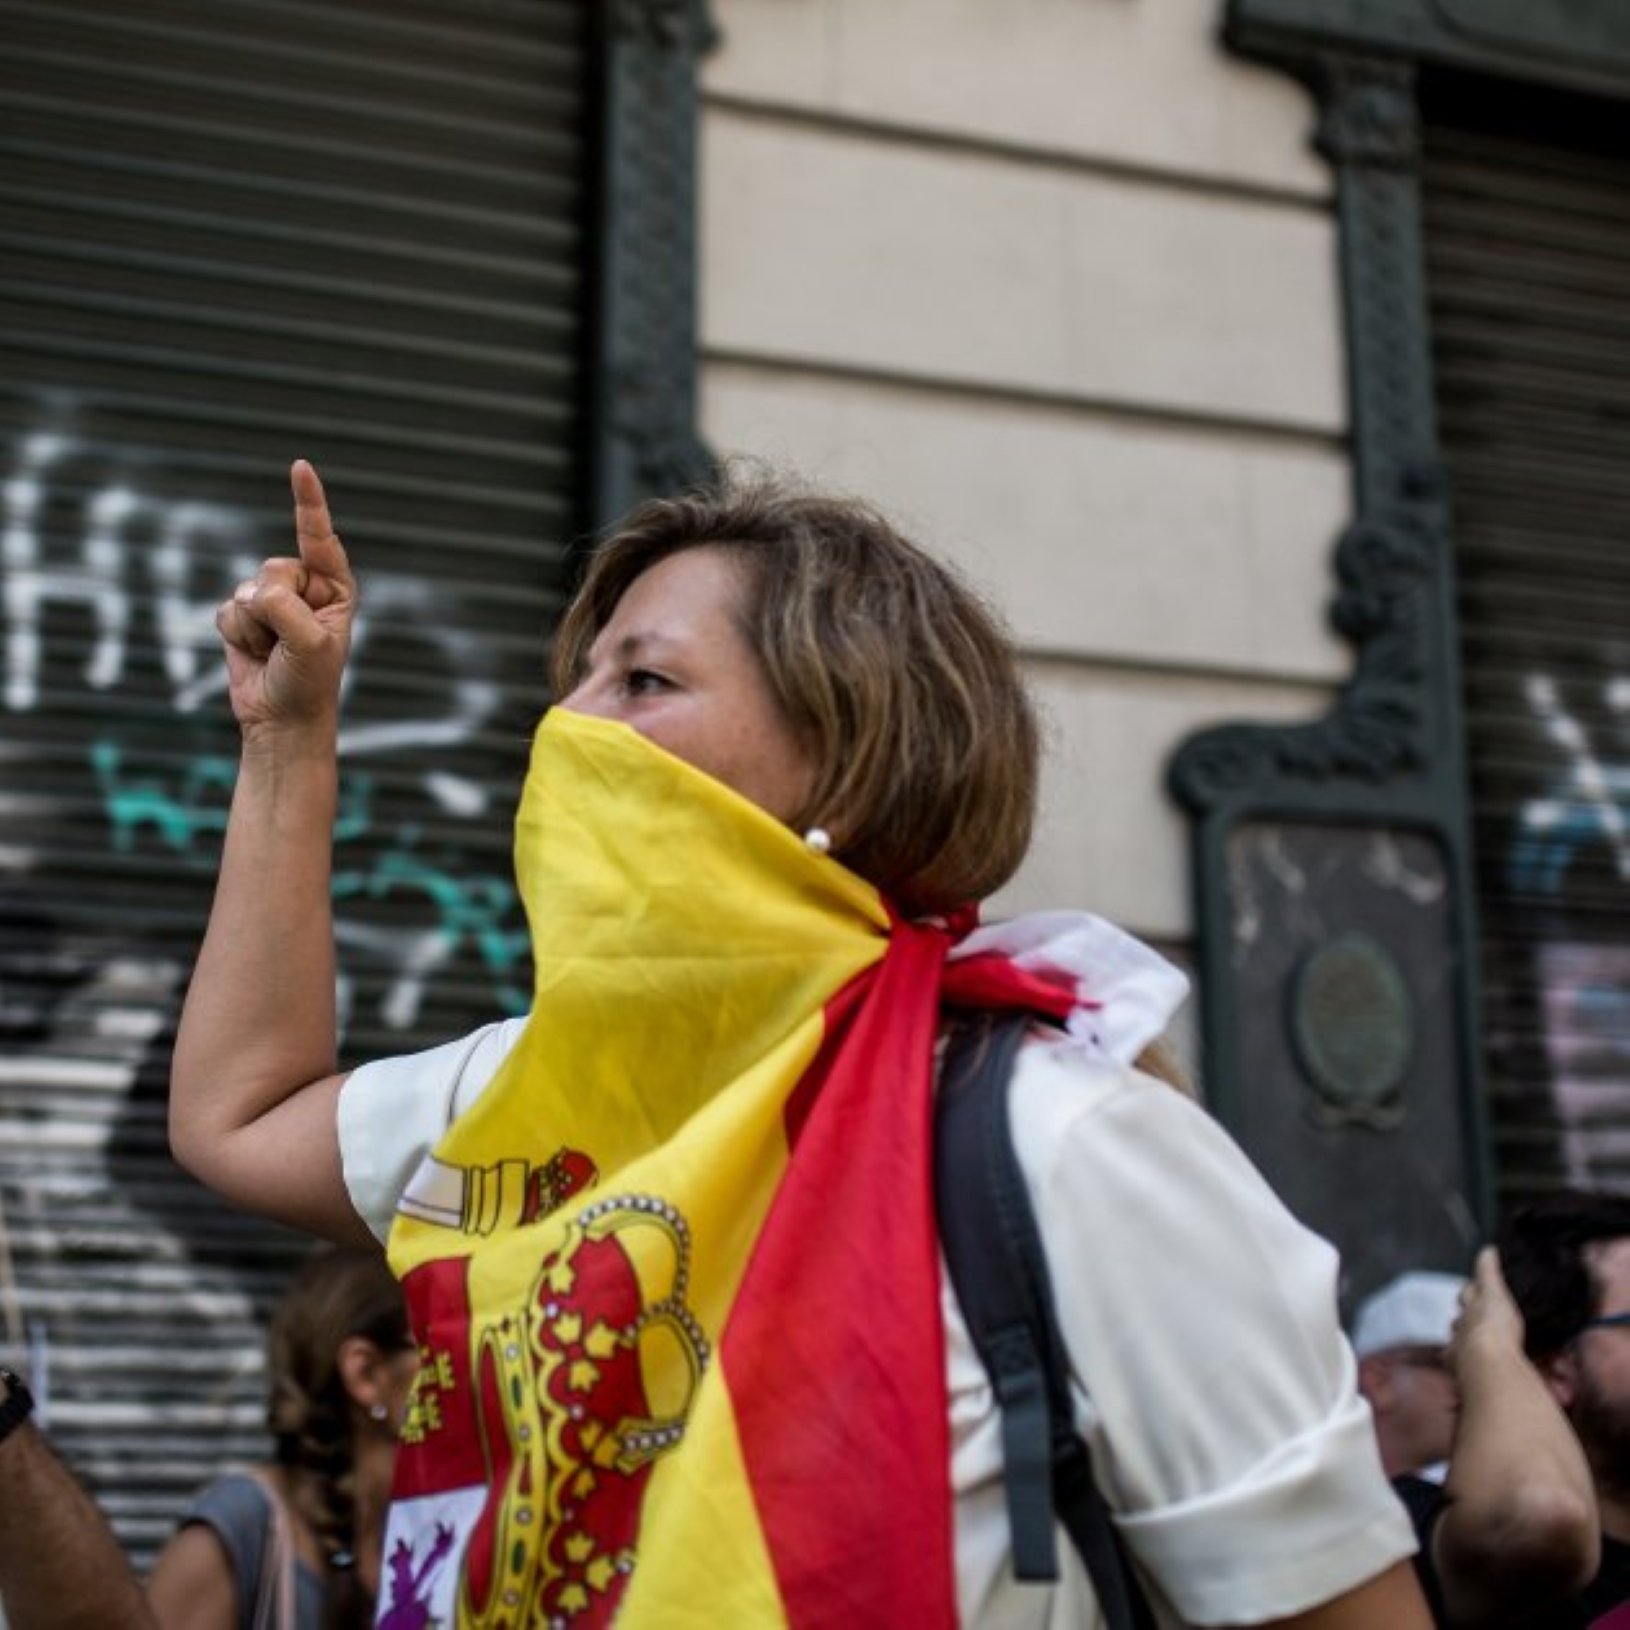 Catalanofobia en la radio: Insultan a un locutor por hablar catalán y estalla